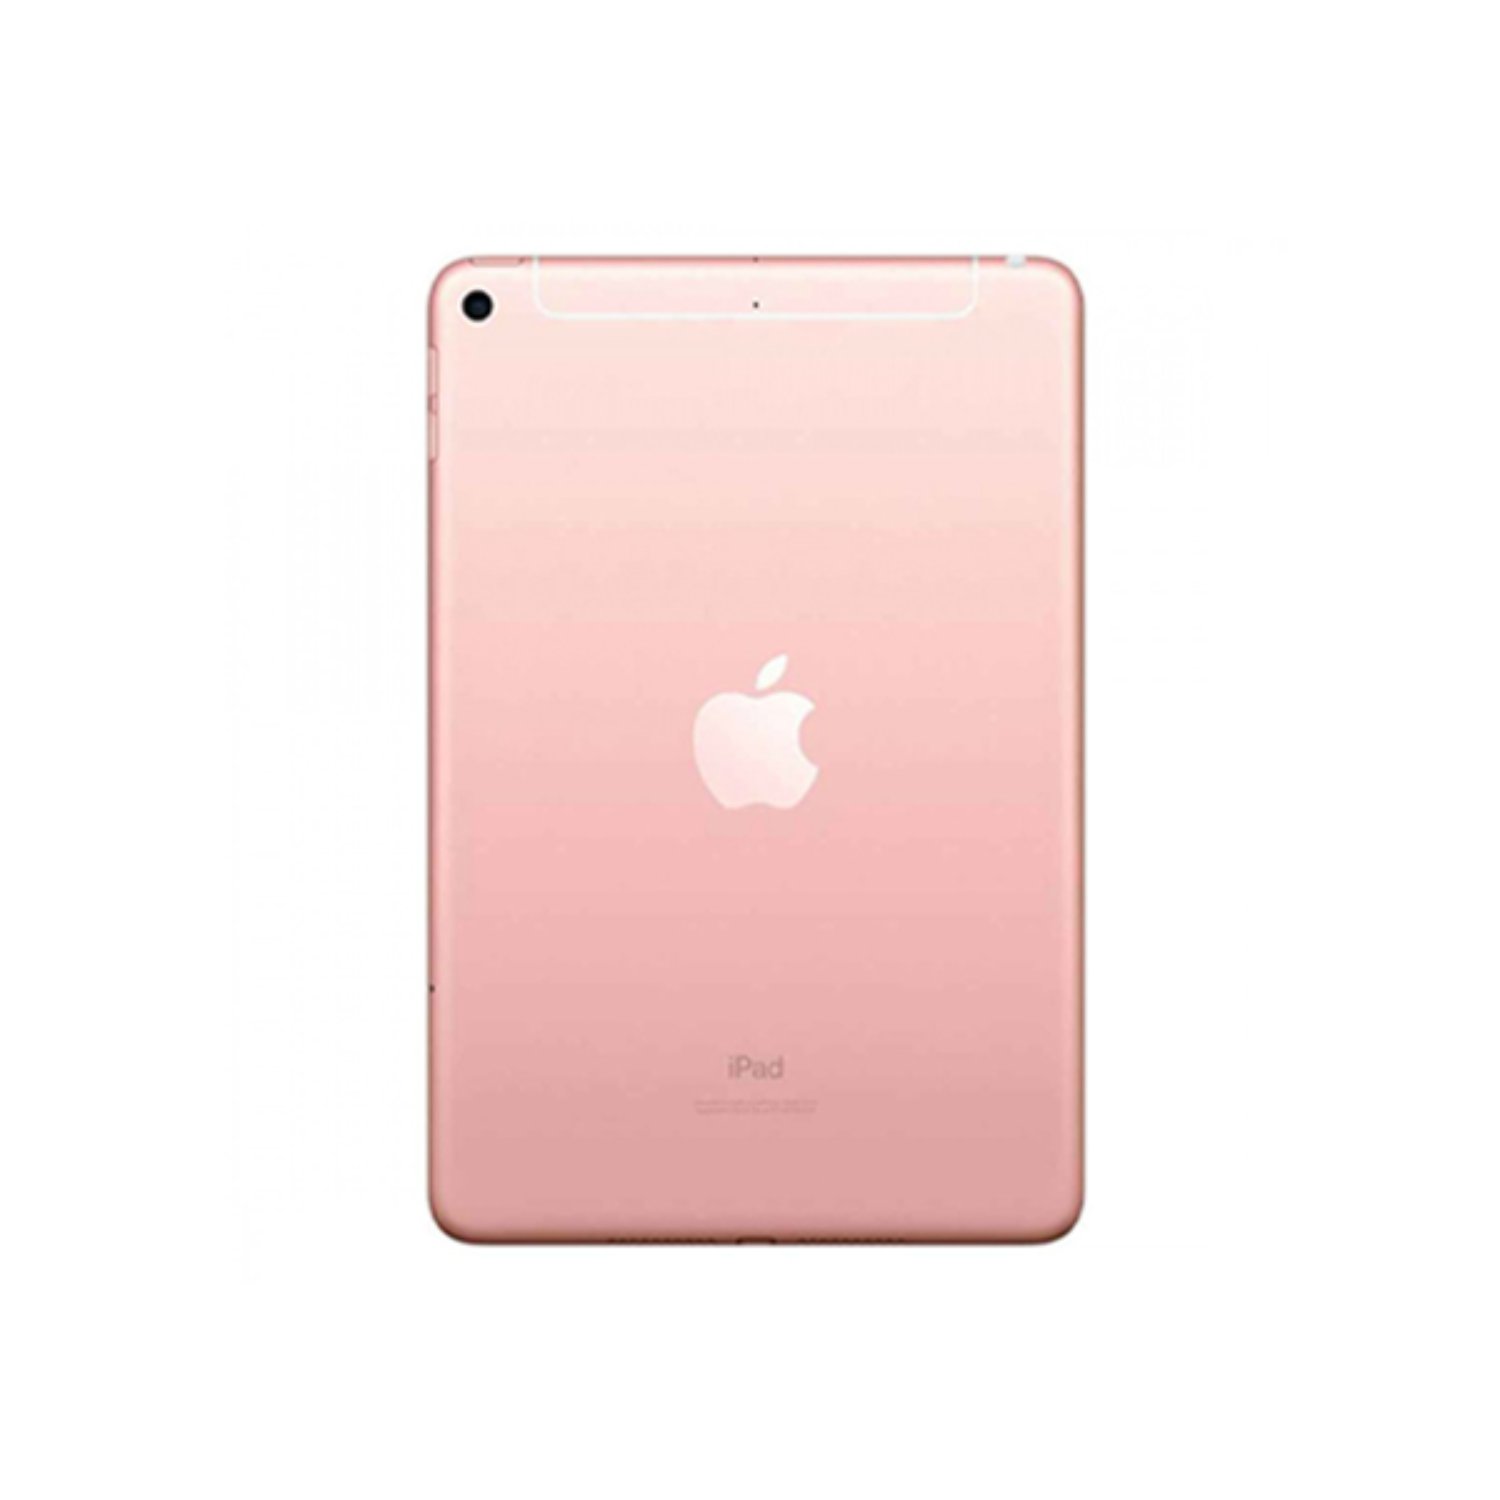 آیپد مینی 7.9 اینچ 2019 اپل حافظه 64 گیگابایت LTE مدل Apple iPad Mini 7.9 inch 5th Gen 3GB-64GB LTE 2019